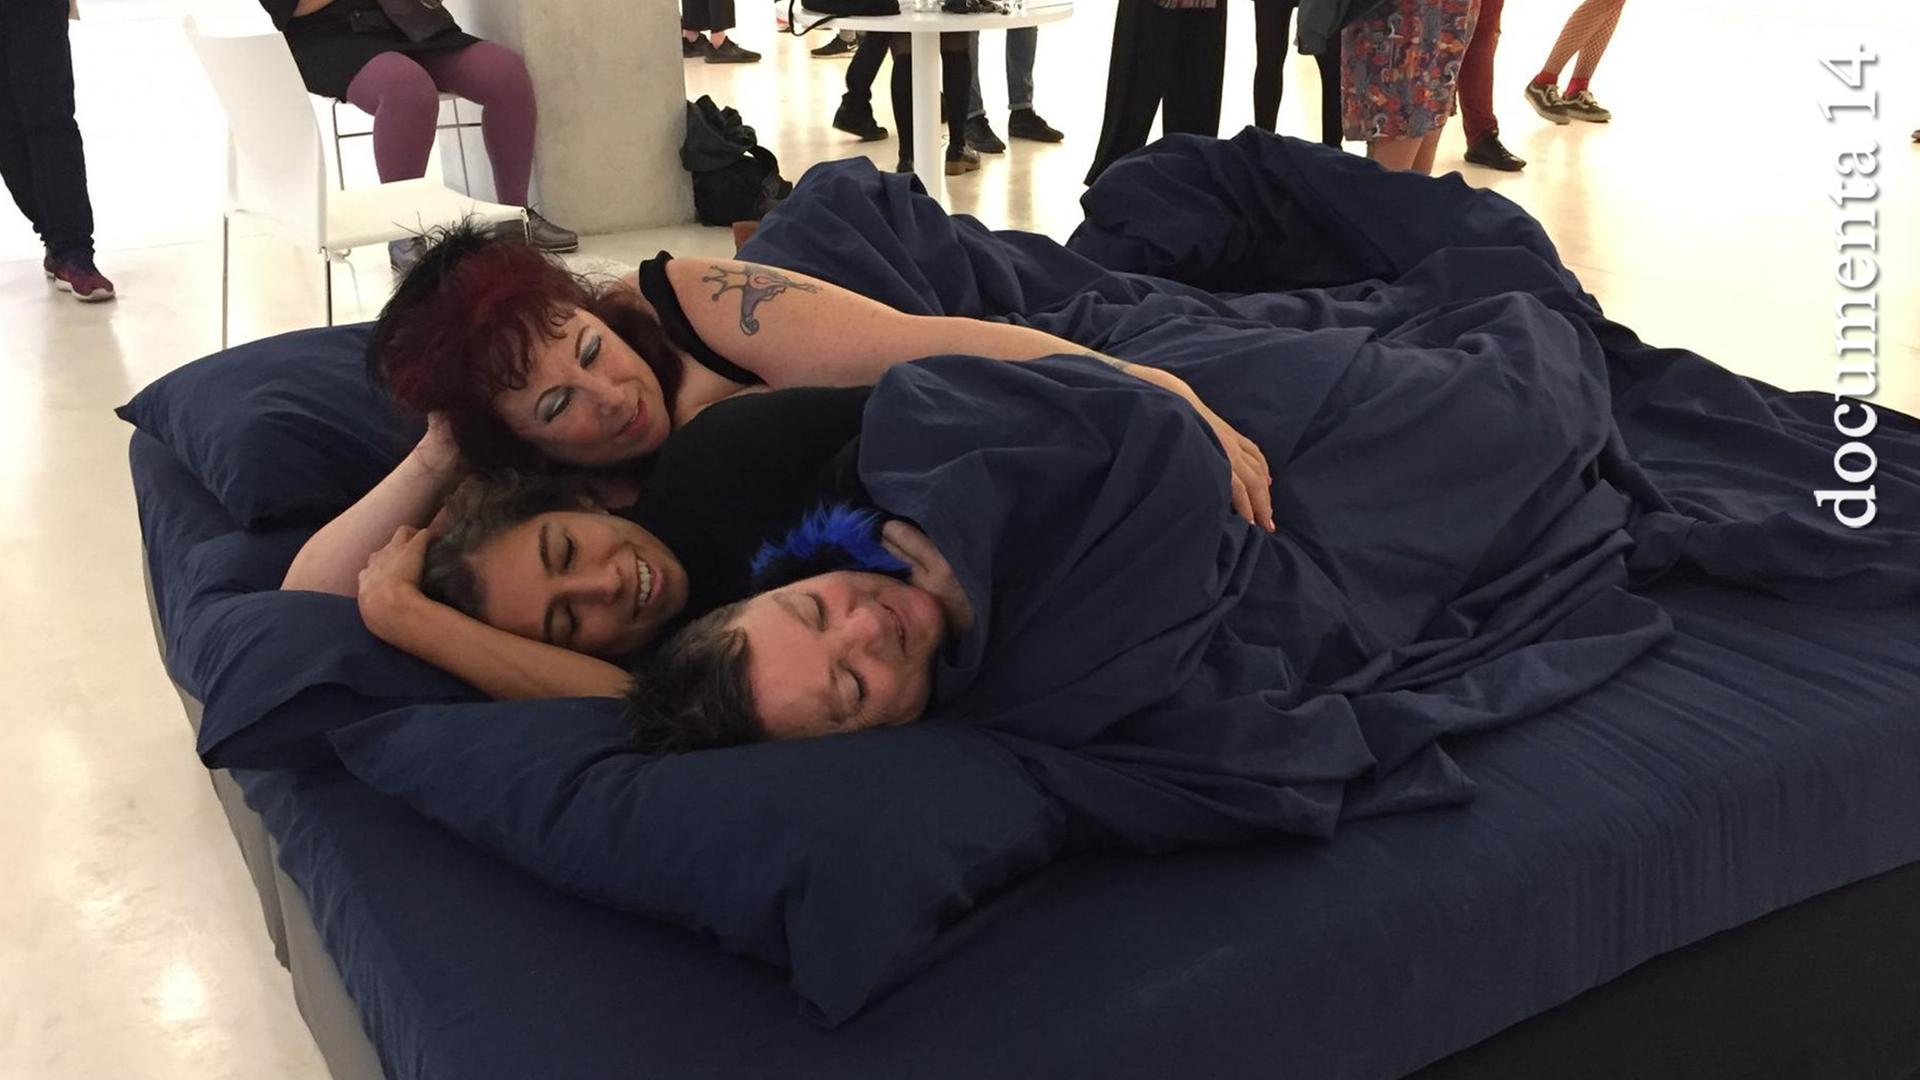 Annie Sprinkle und Beth Stephens haben im Athener Museum für Zeitgenössische Kunst ein Bett aufgebaut und kuscheln darin mit einer Besucherin.